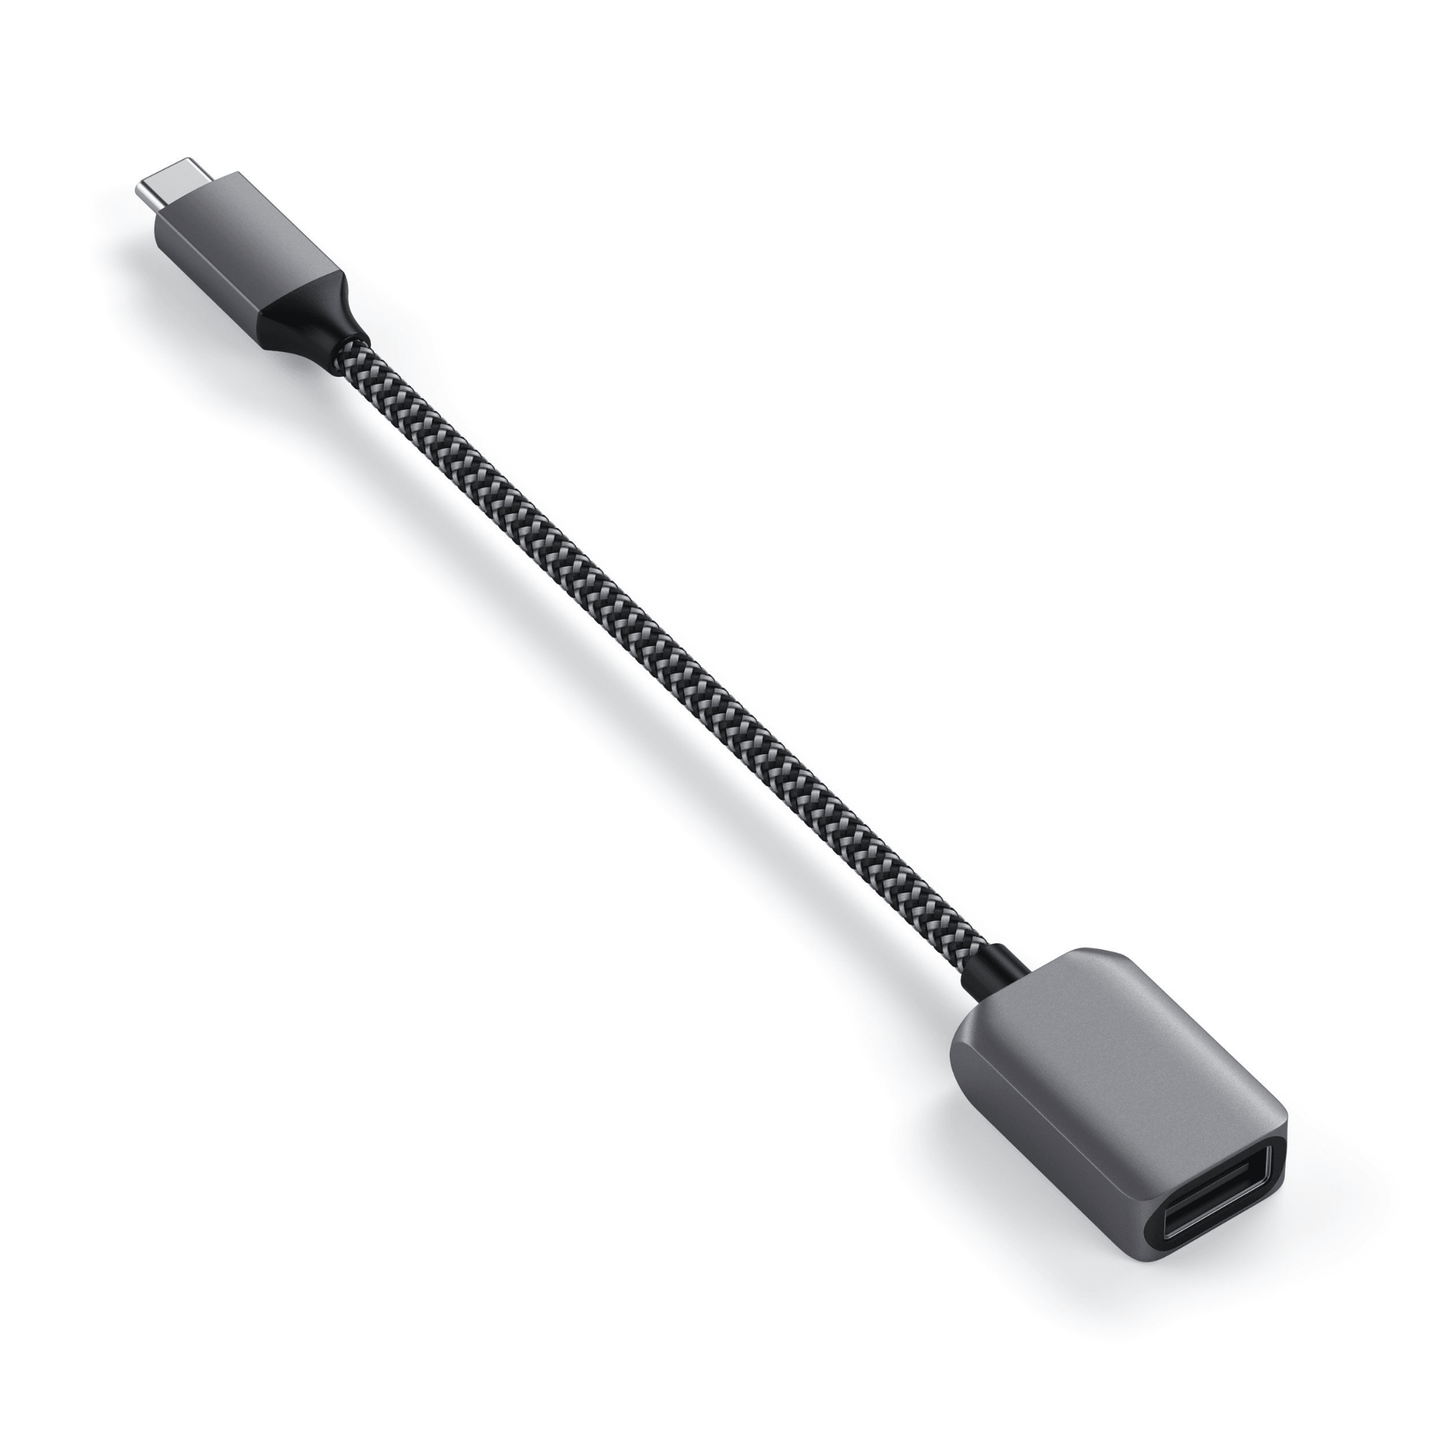 Satechi - Hochwertiges & robustes USB-C zu USB 3.0 Adapterkabel - Space Gray / Grau - Pazzar.ch